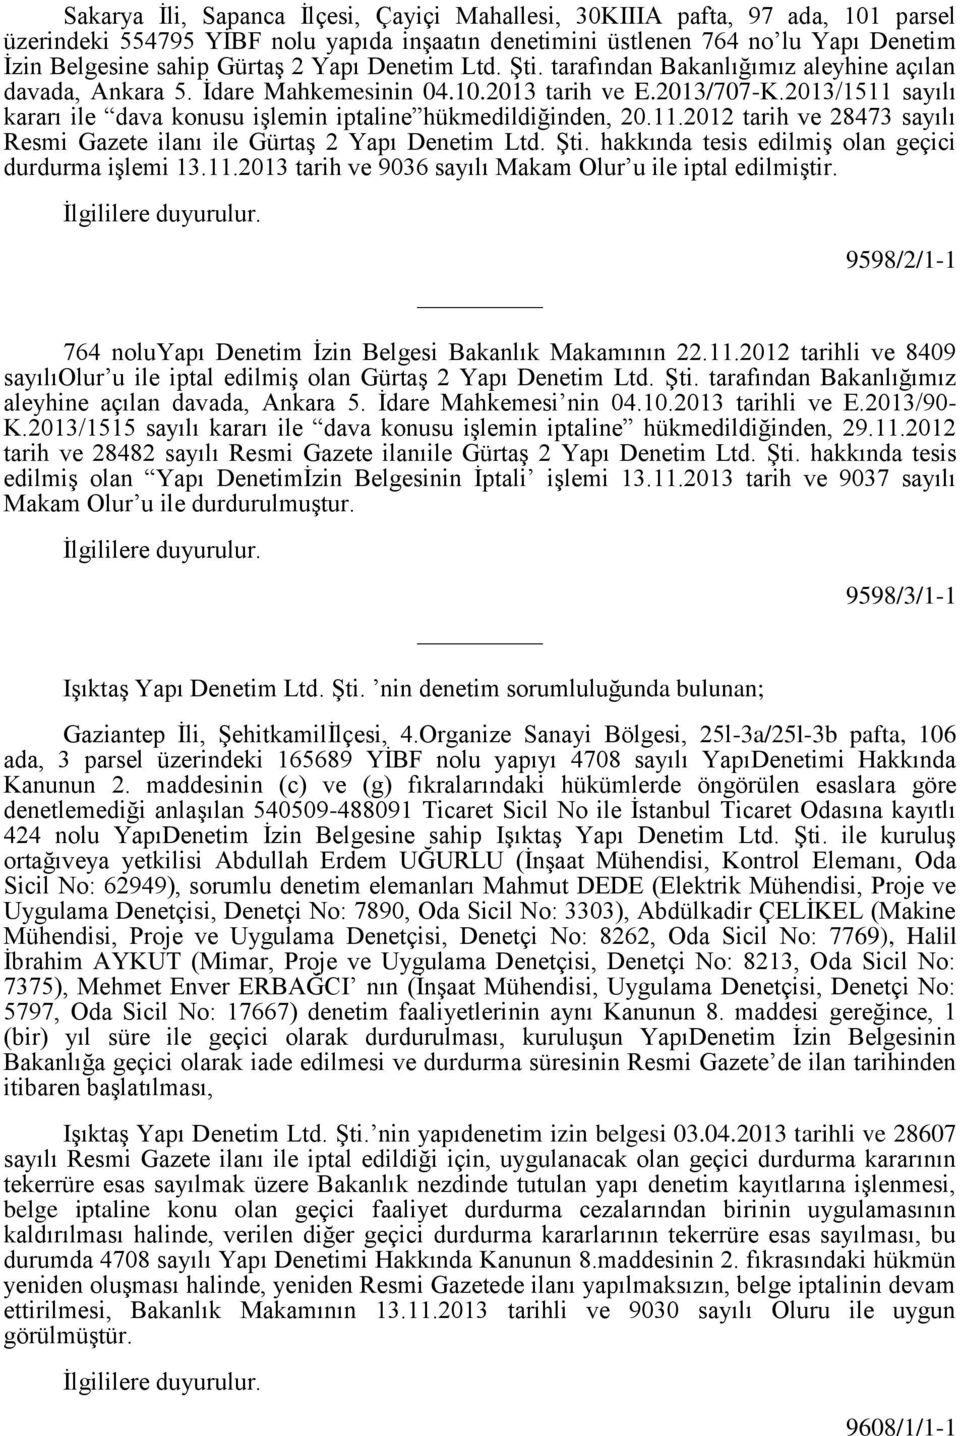 2013/1511 sayılı kararı ile dava konusu işlemin iptaline hükmedildiğinden, 20.11.2012 tarih ve 28473 sayılı Resmi Gazete ilanı ile Gürtaş 2 Yapı Denetim Ltd. Şti.